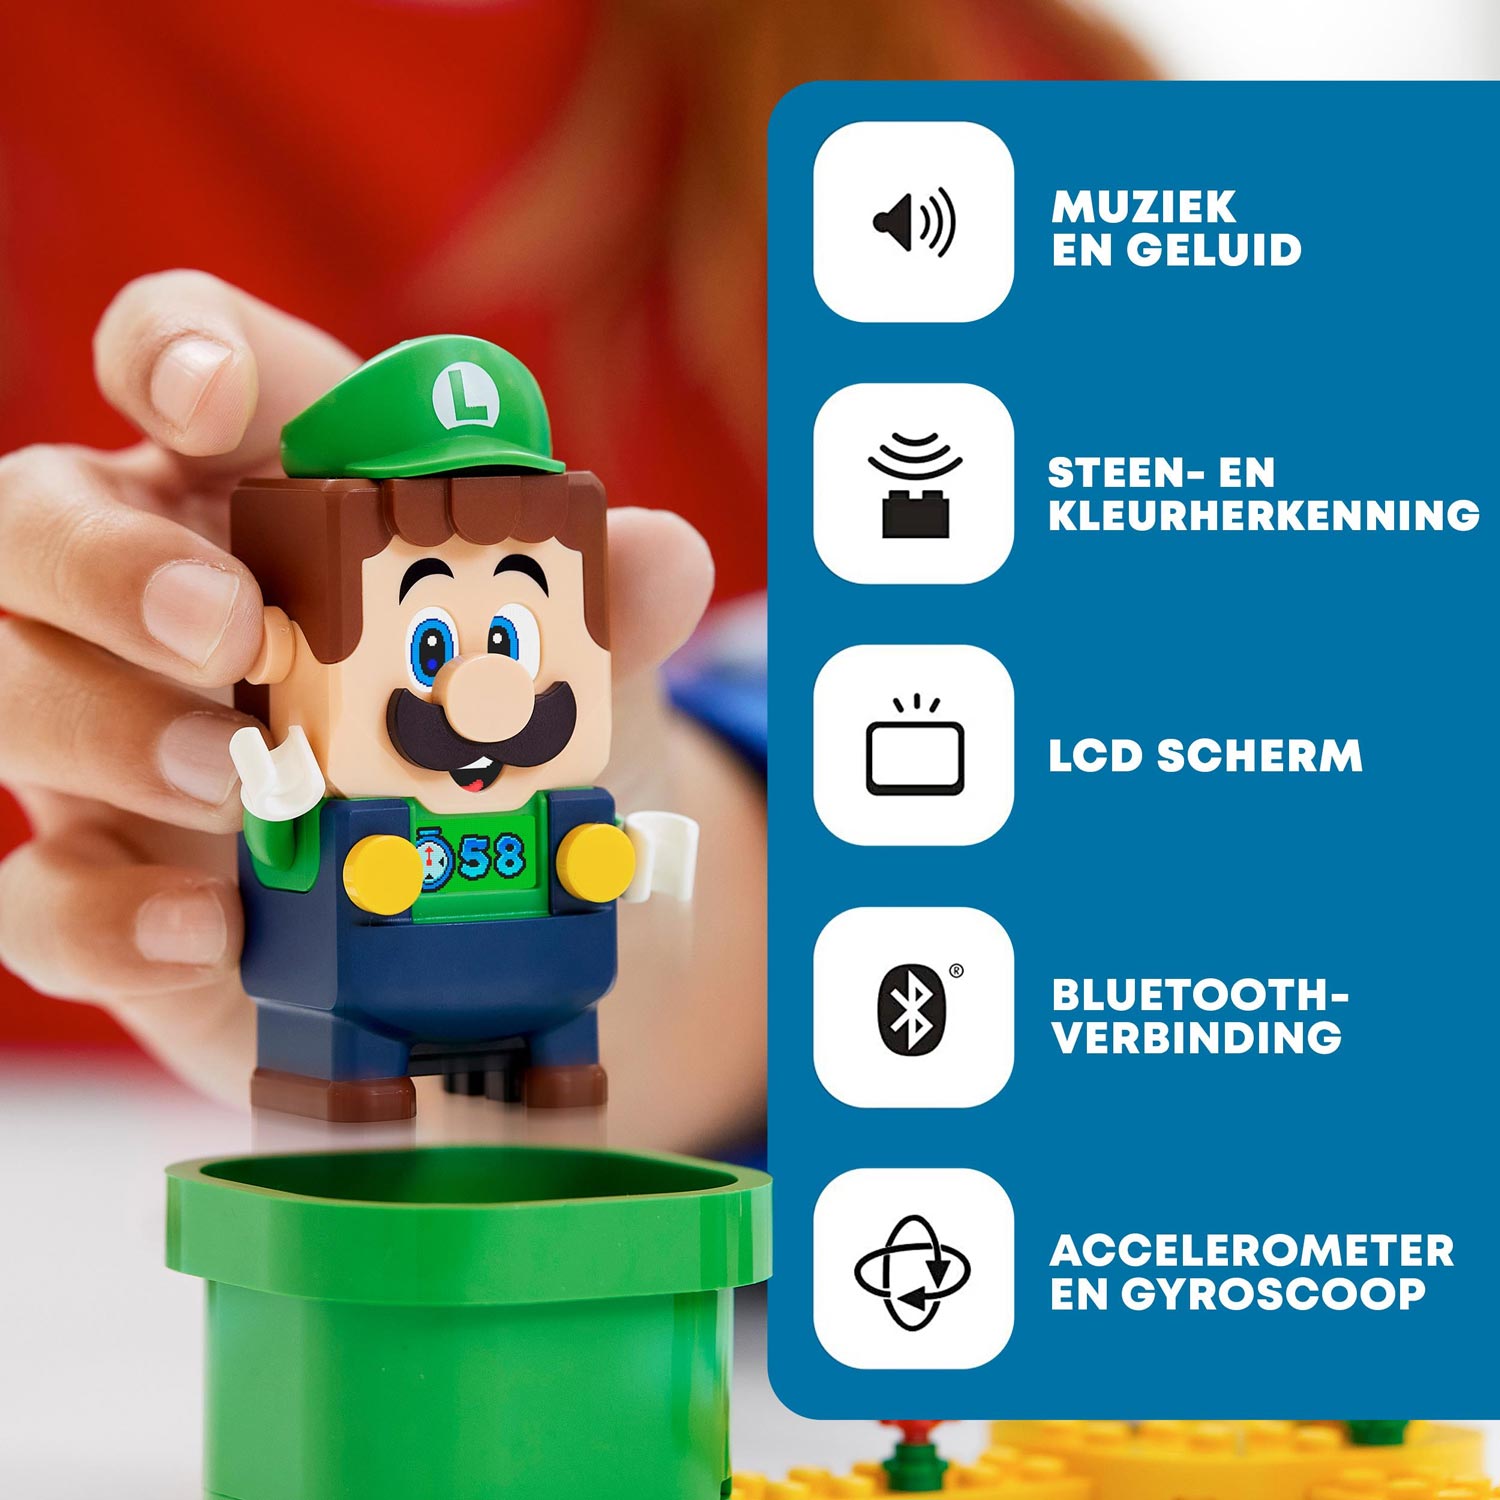 Com bluetooth e LCD, Lego do Super Mario faz game virar jogo da